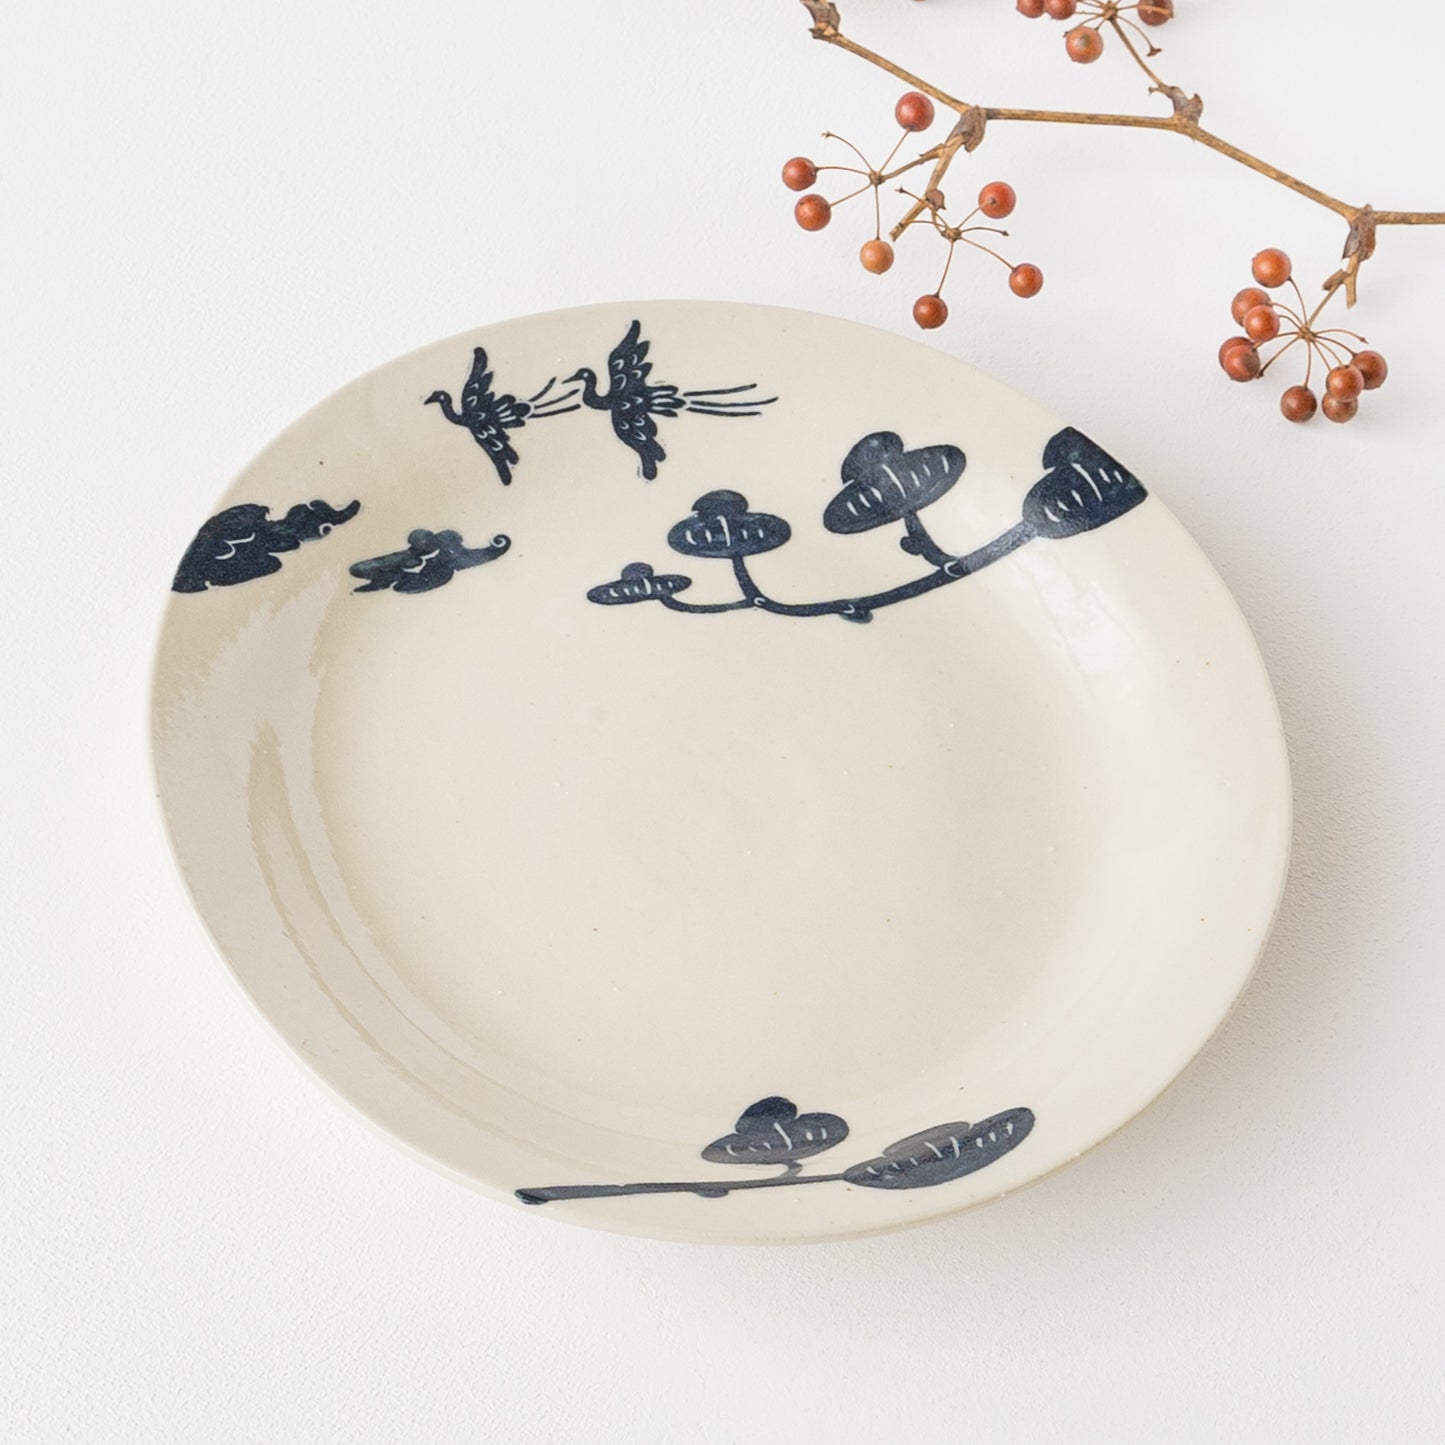 鳥と松の絵柄に物語を感じる吉村尚子さん野掻き落としのパスタ皿